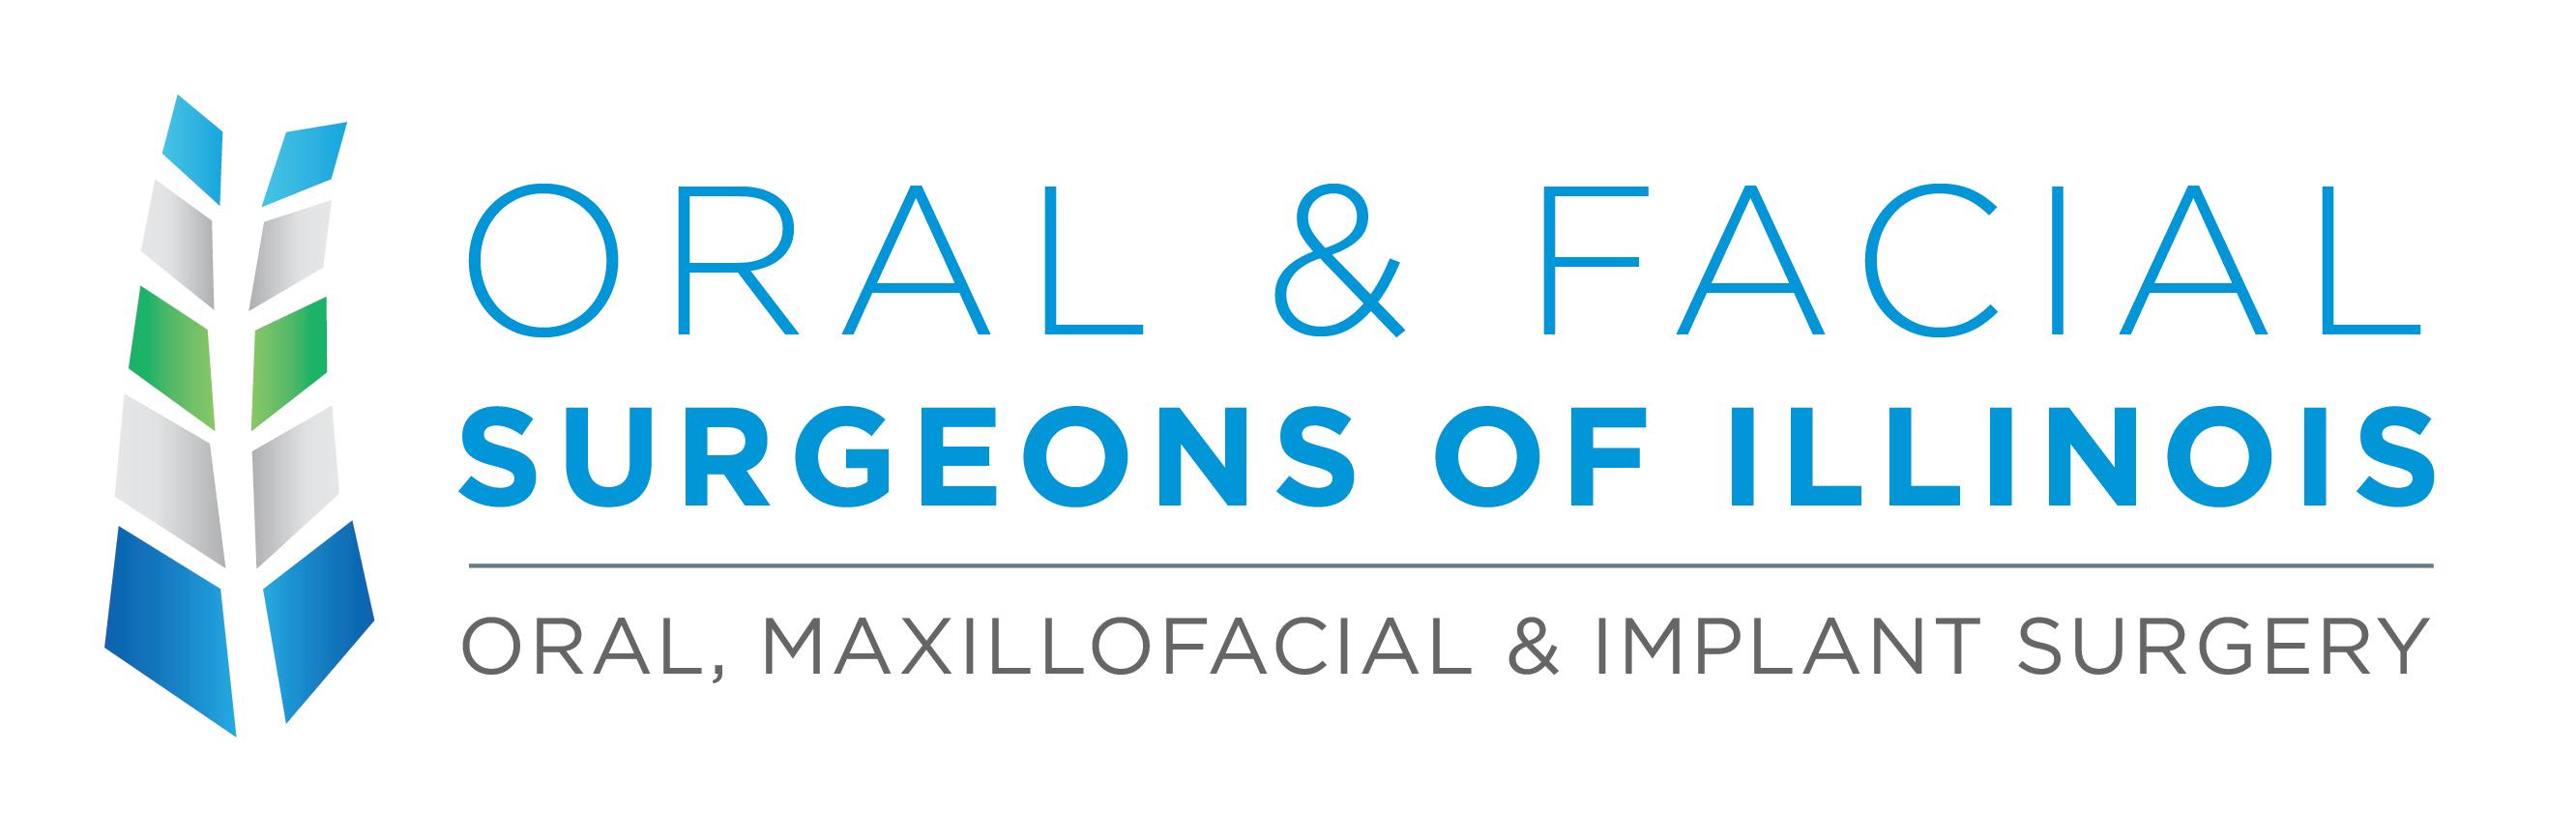 Oral & Facial Surgeons of Illinois Photo